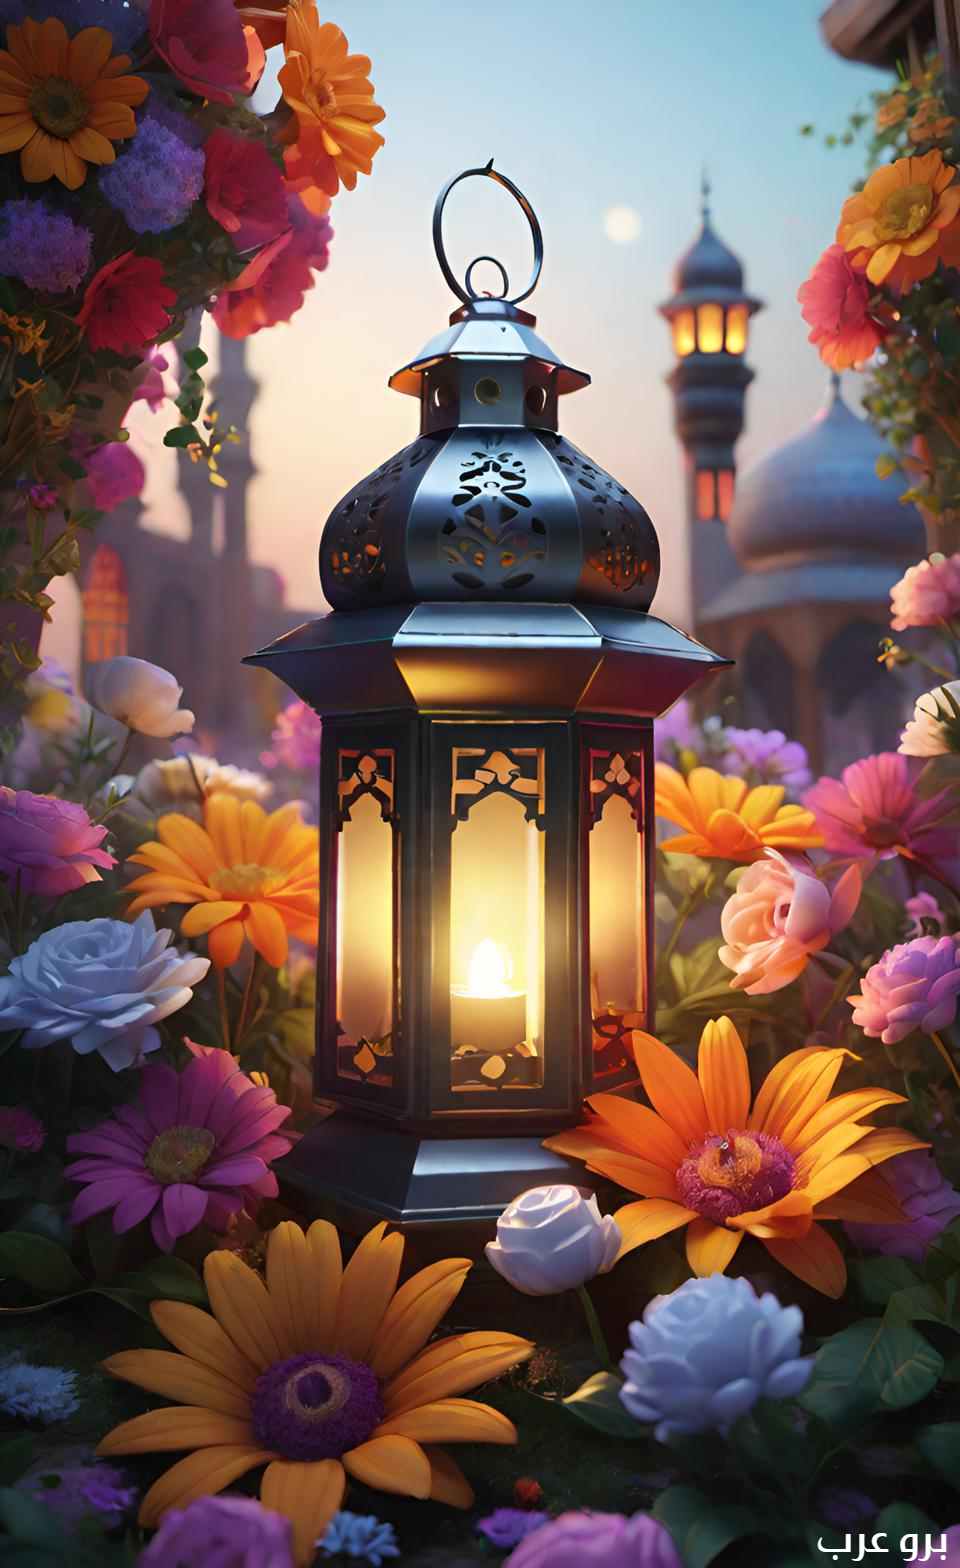 صور فوانيس رمضان بين الزهور و الورود رائعة